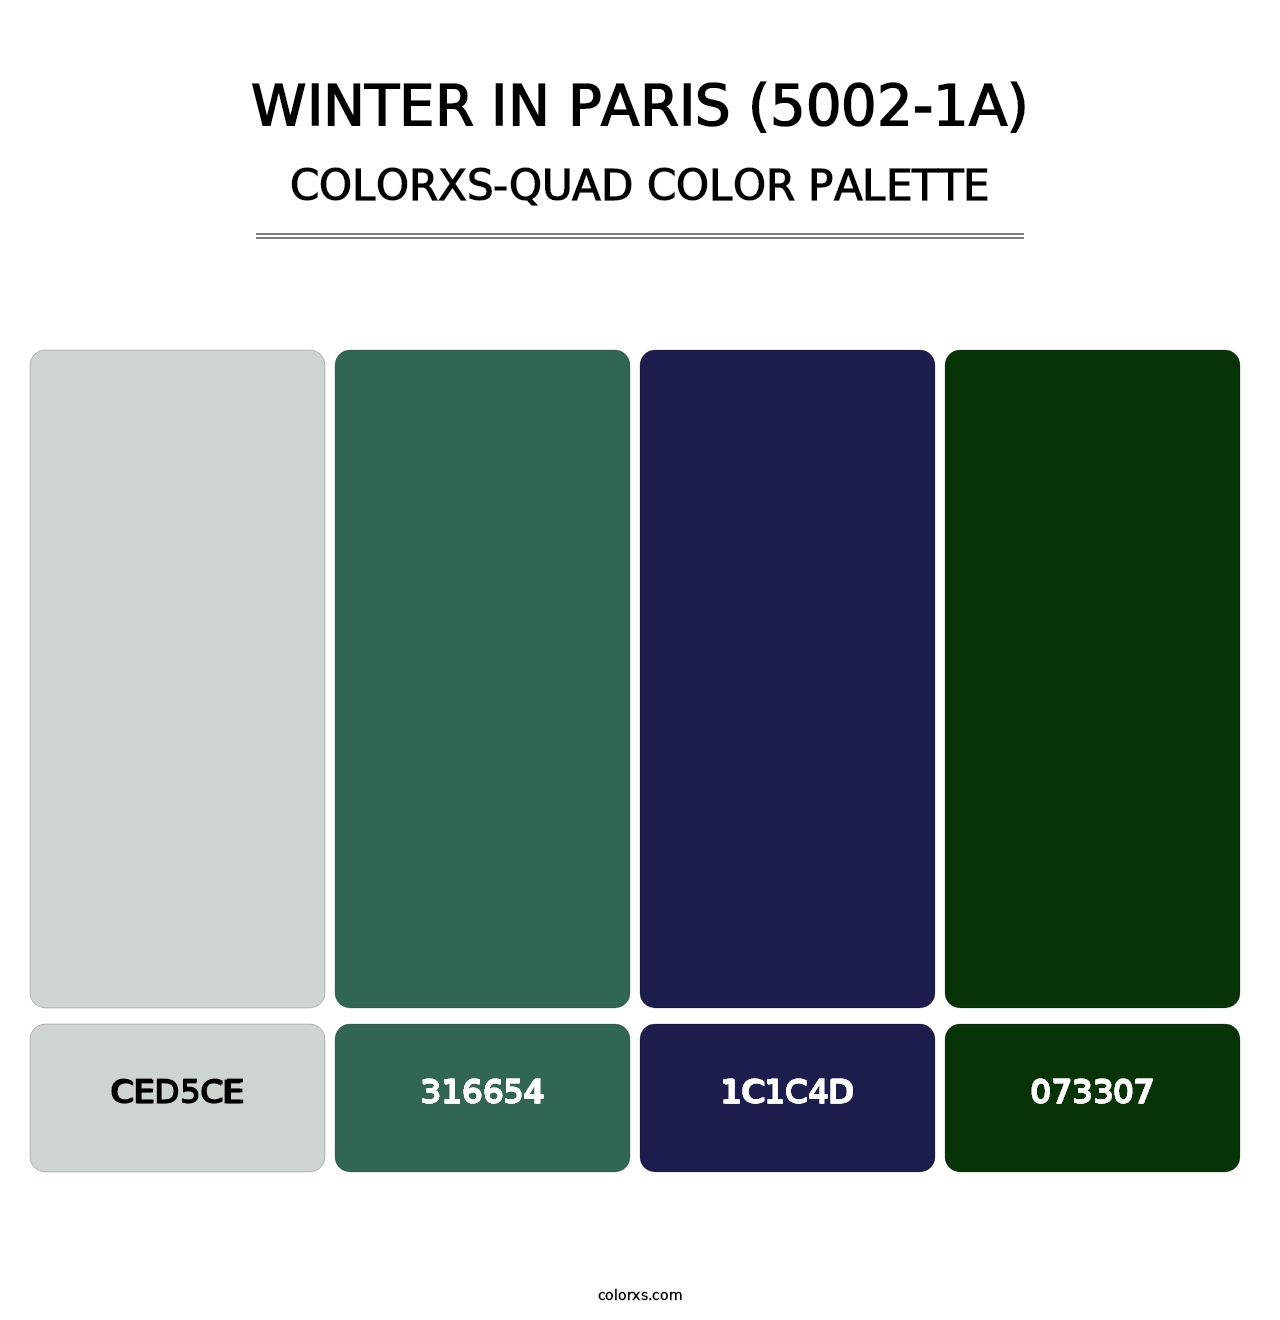 Winter in Paris (5002-1A) - Colorxs Quad Palette